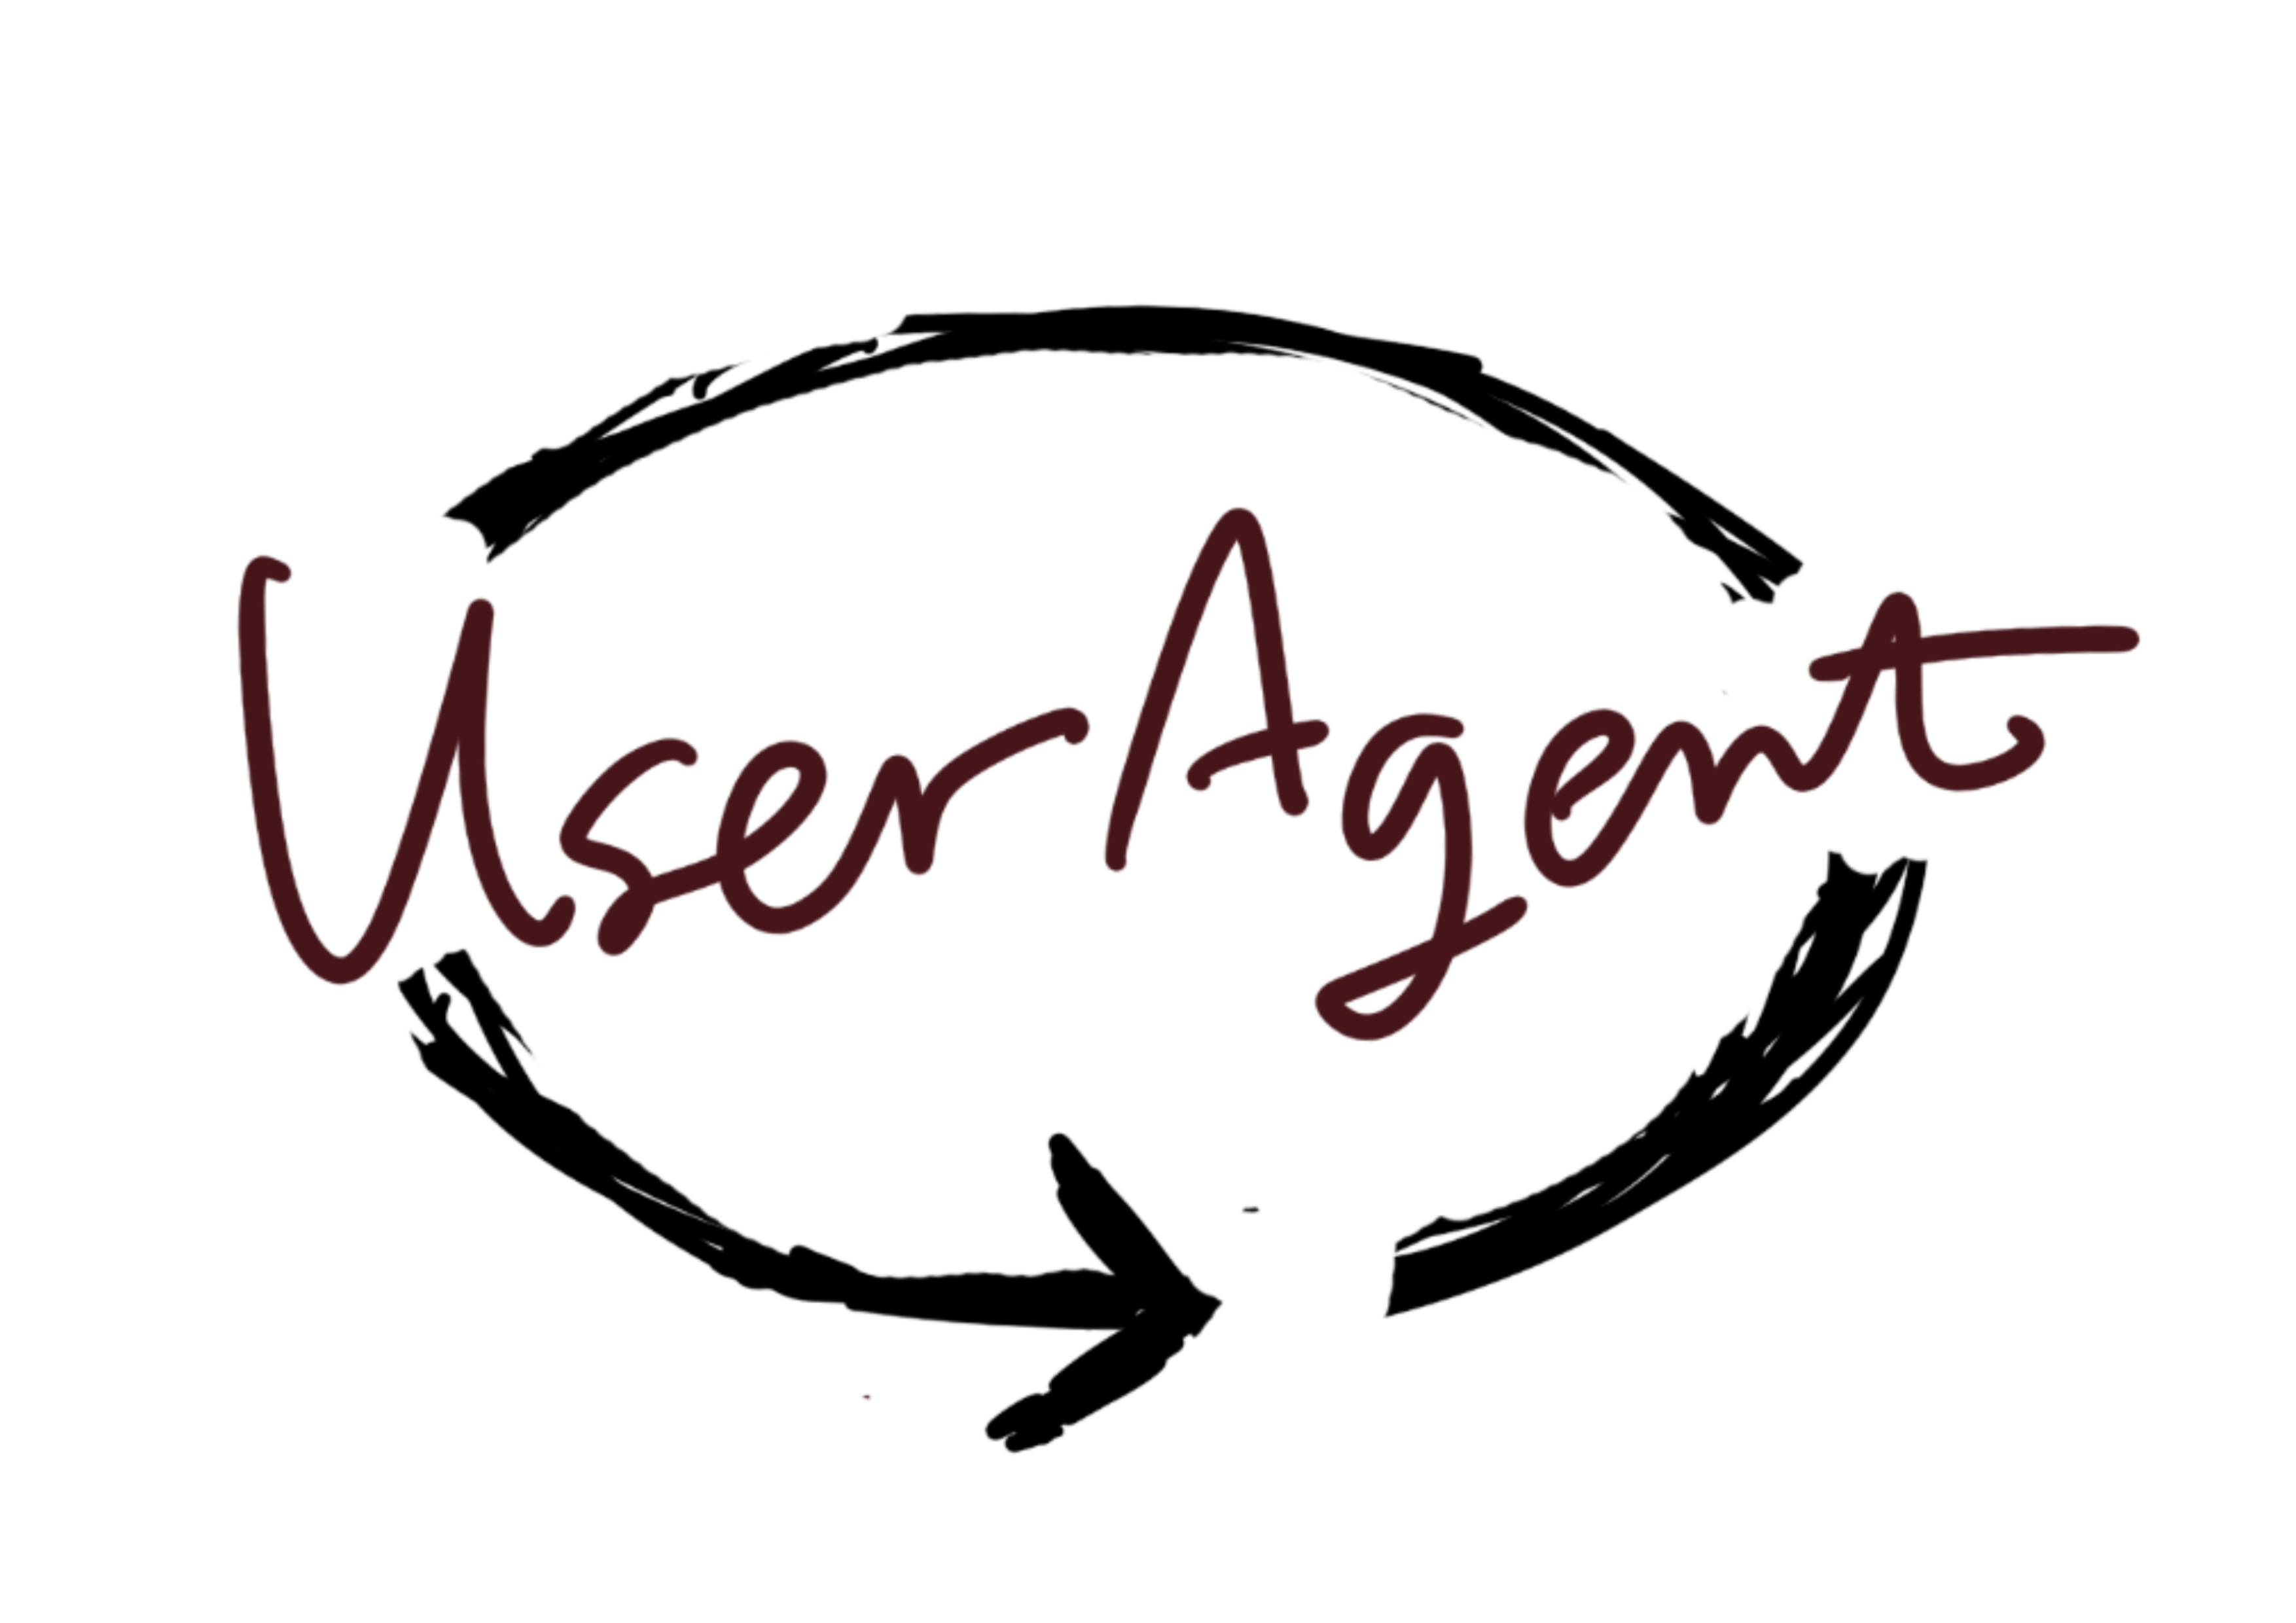 user-agent logo